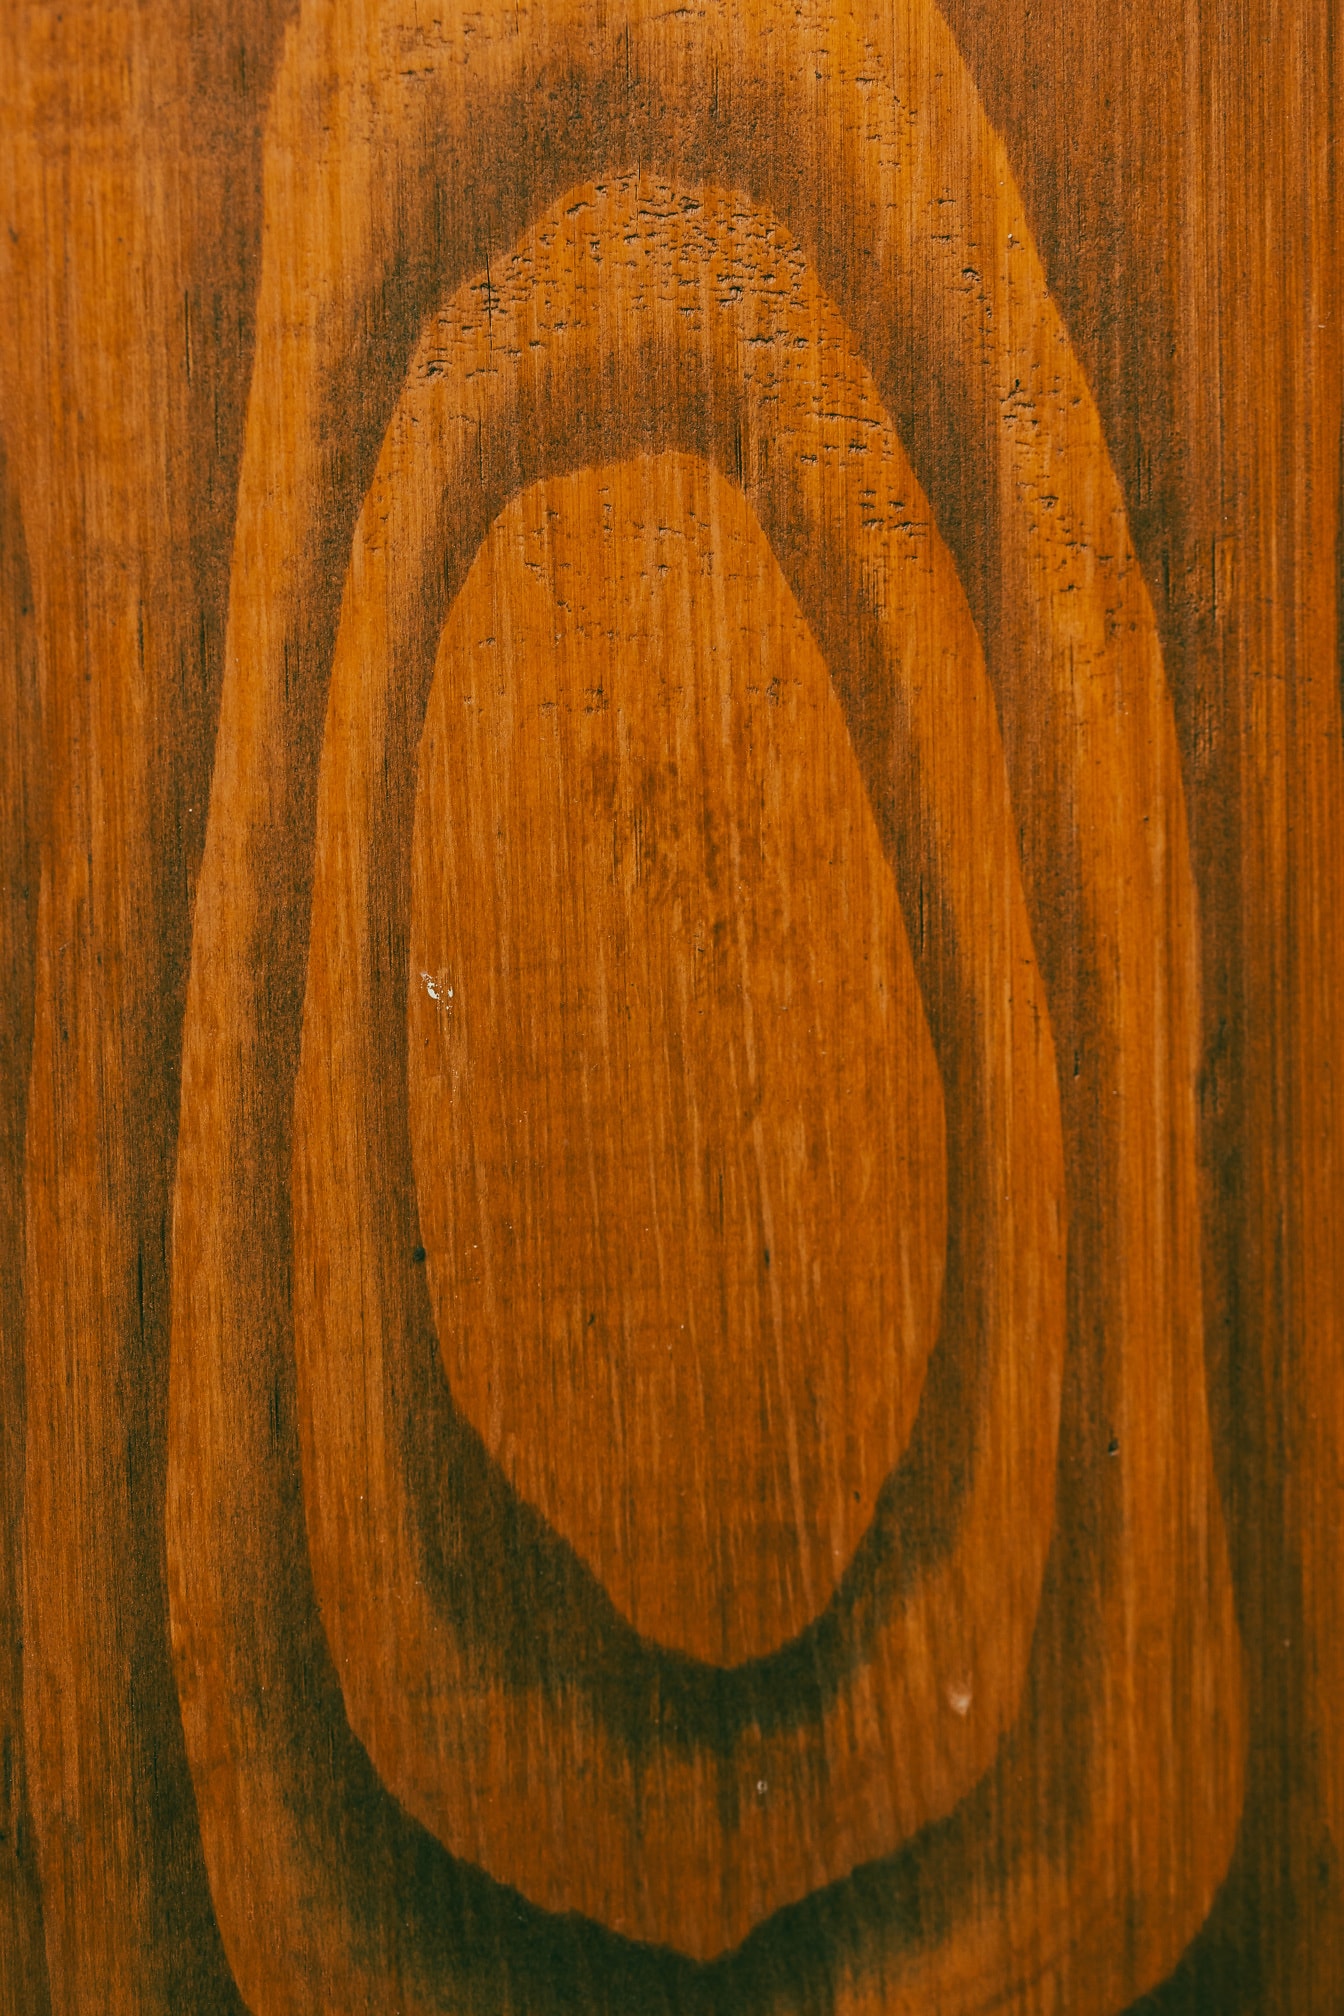 Seção transversal close-up da textura da prancha de madeira do nó